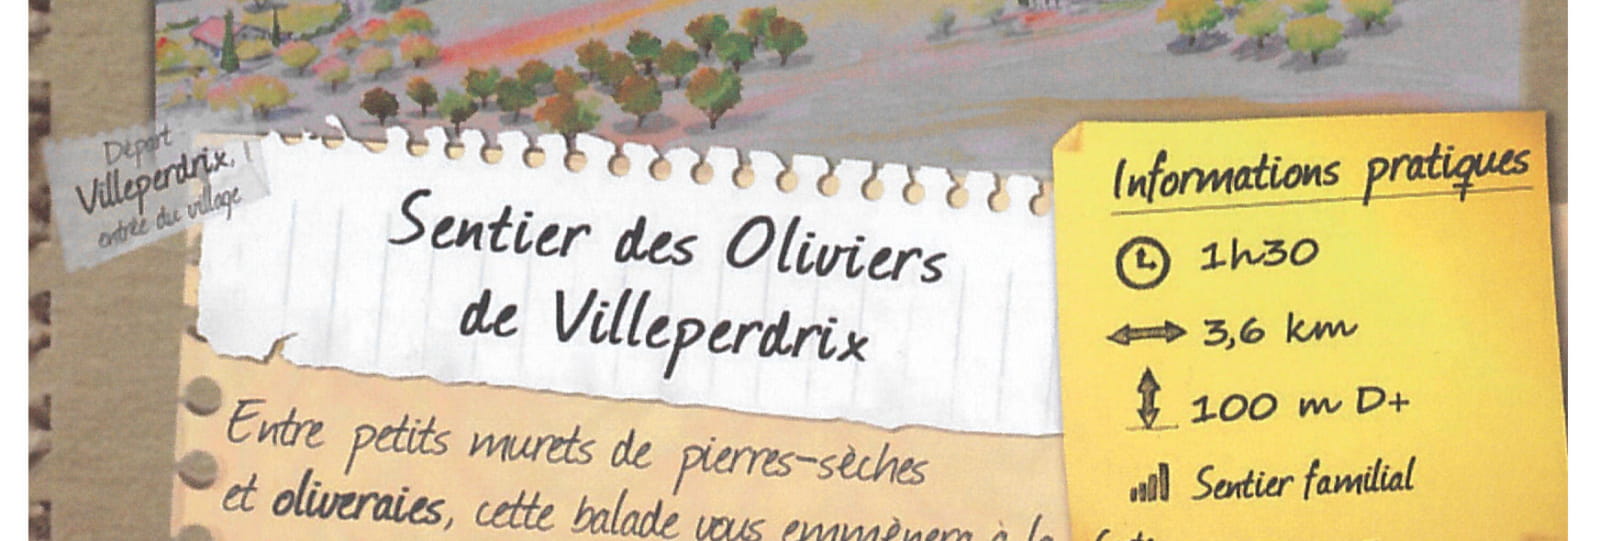 Sentier des Oliviers de Villeperdrix